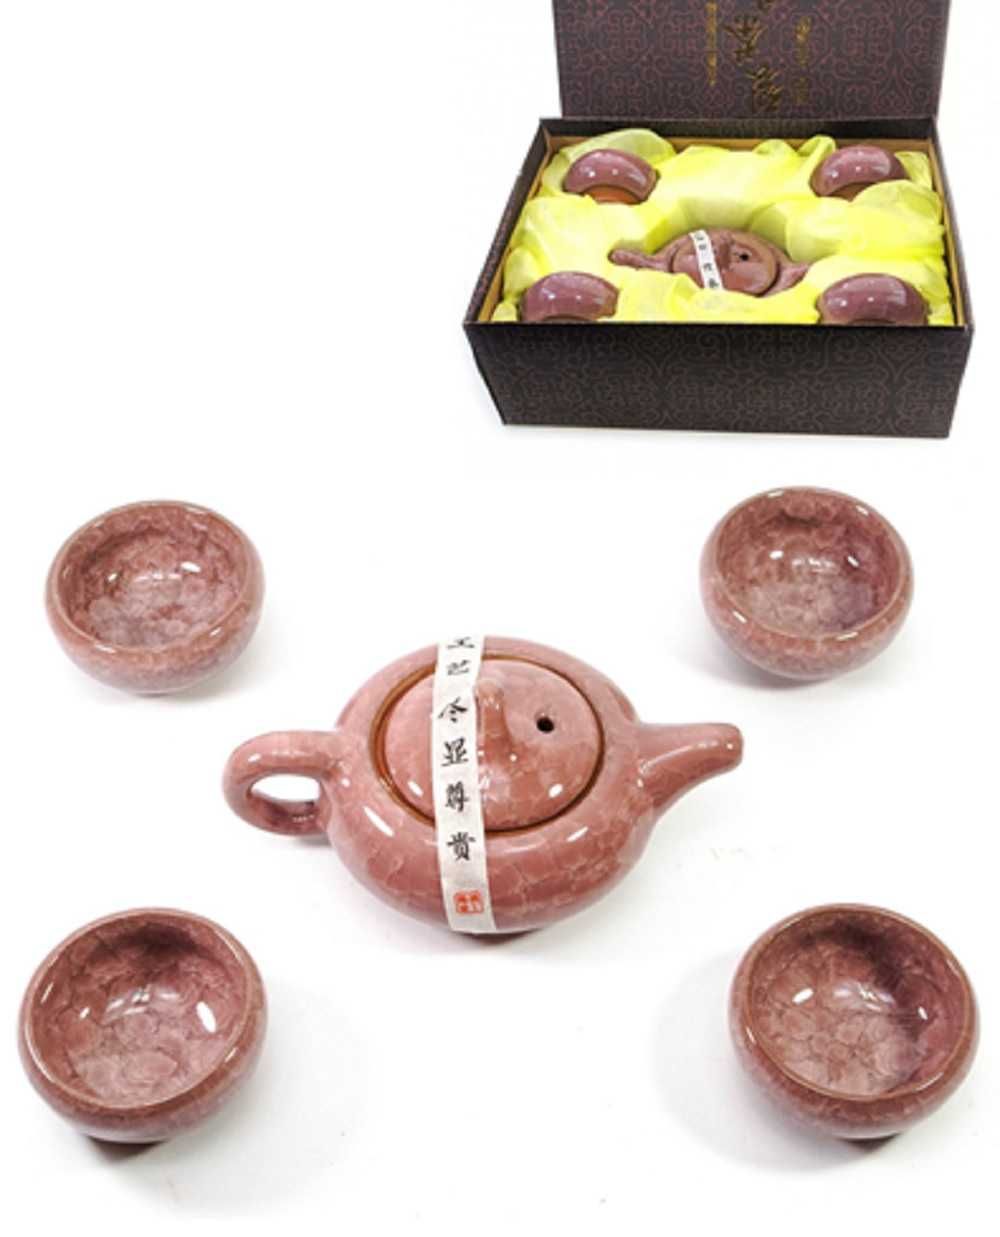 Каталог : Посуда из керамики ,глиняный сервиз, керамический сервиз